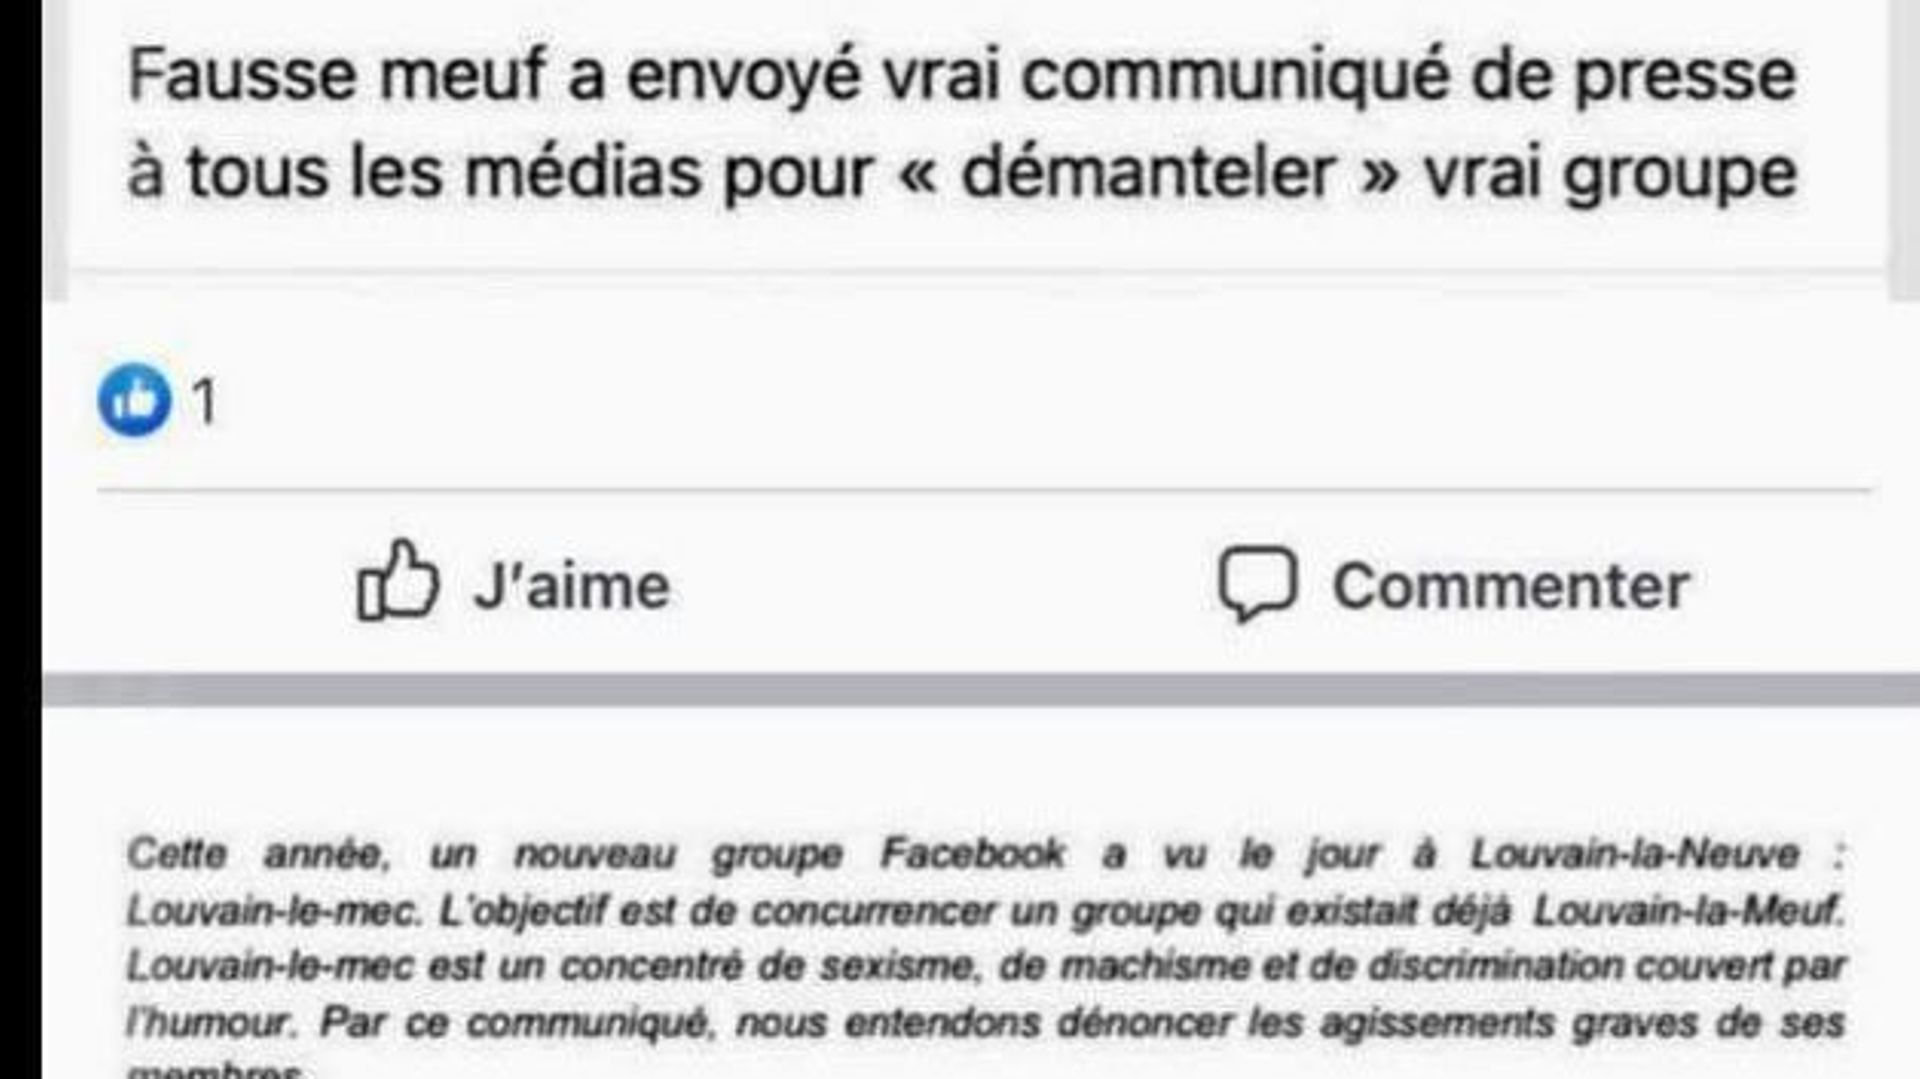 "Louvain-le-mec": un groupe Facebook d'étudiants crée la polémique avec des propos sexistes, homophobes et racistes